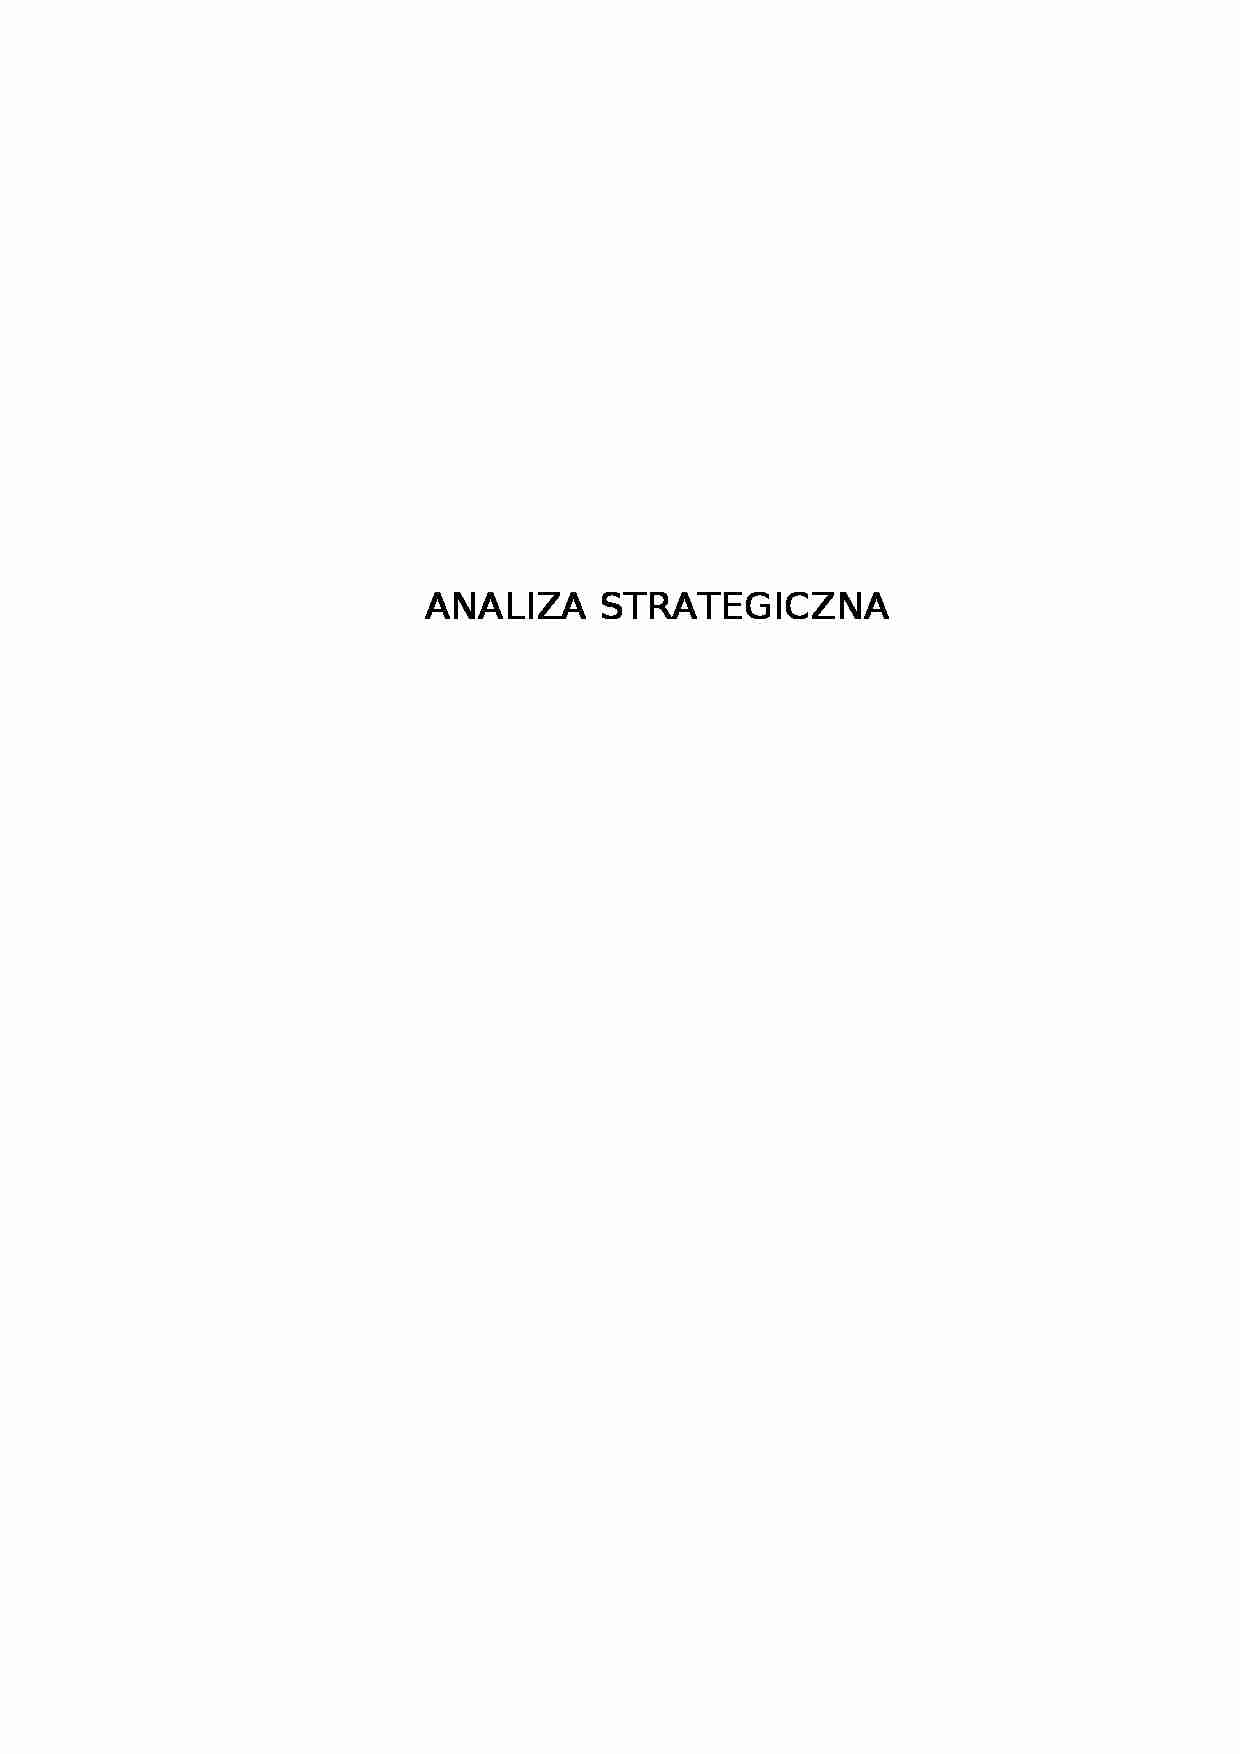 Analiza strategiczna przedsiębiorstwa - Analiza strategiczna - strona 1